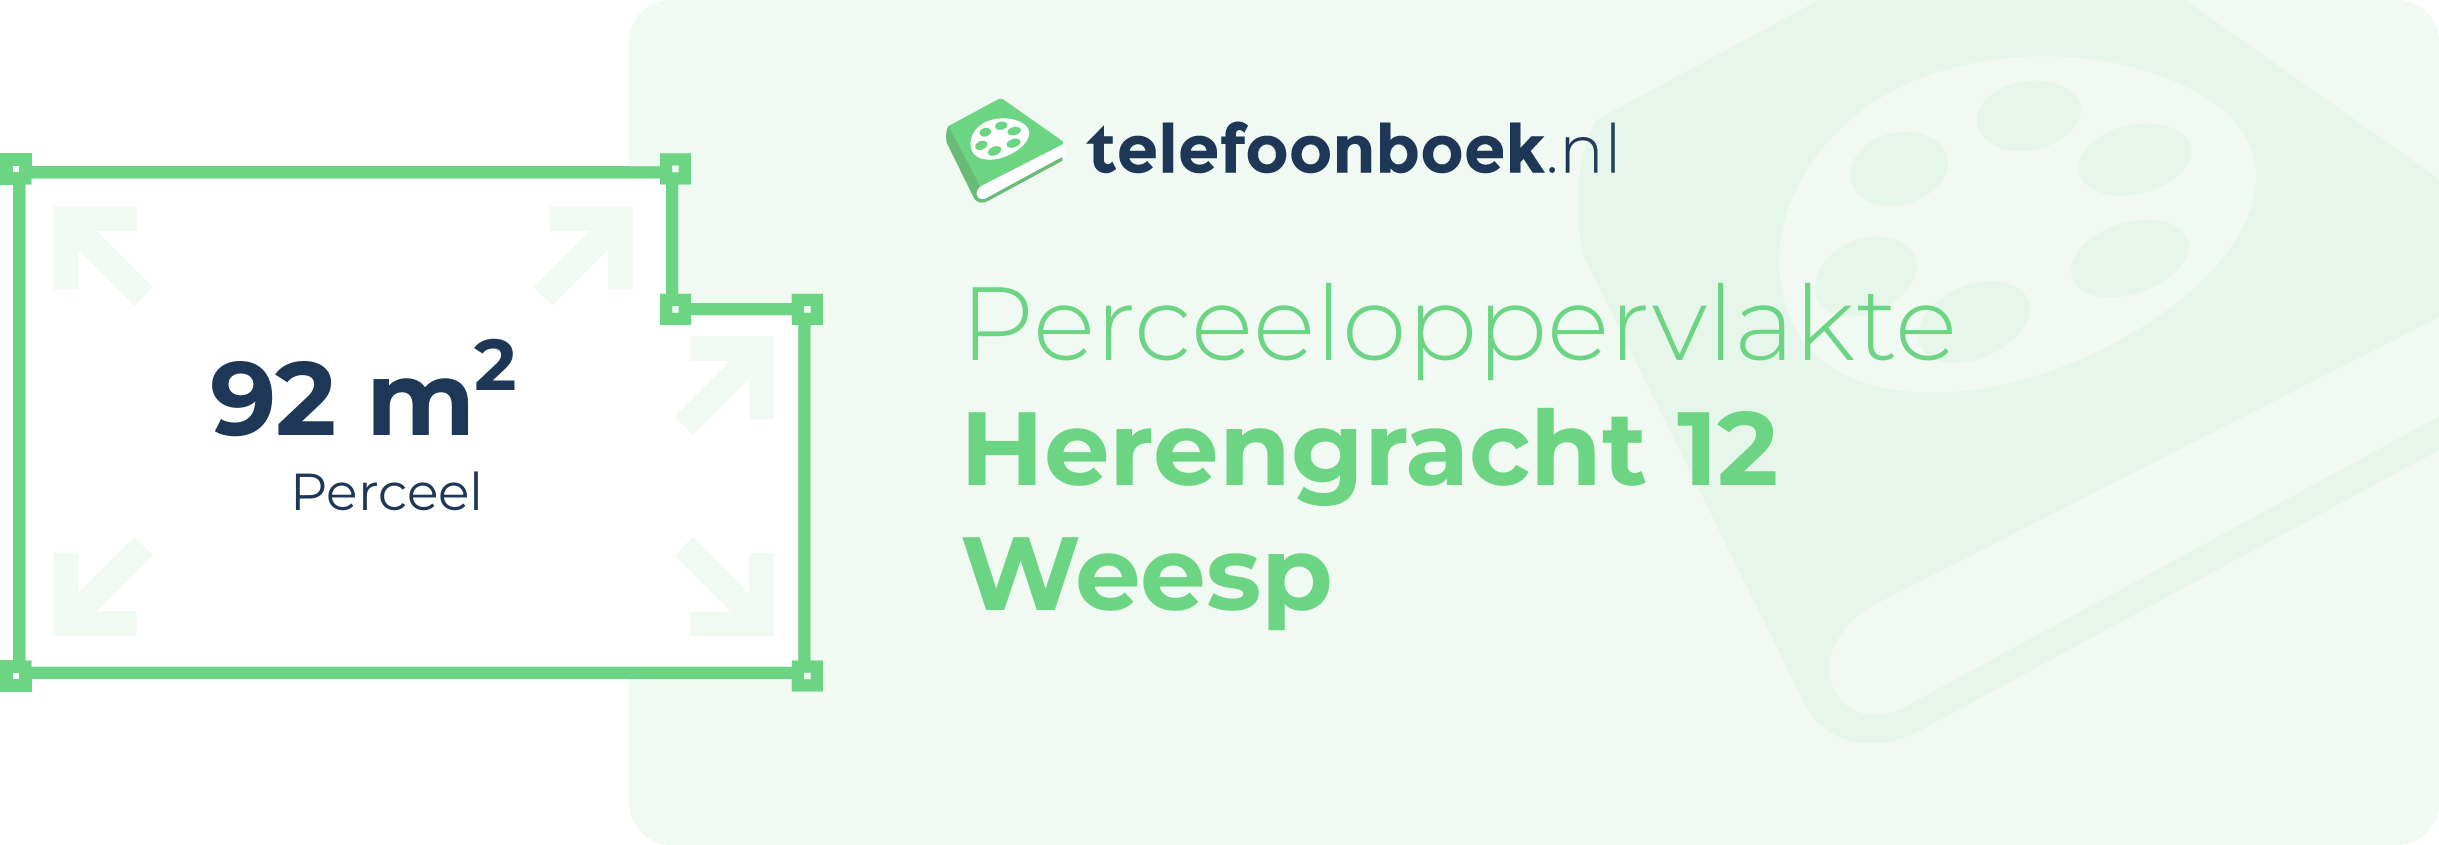 Perceeloppervlakte Herengracht 12 Weesp